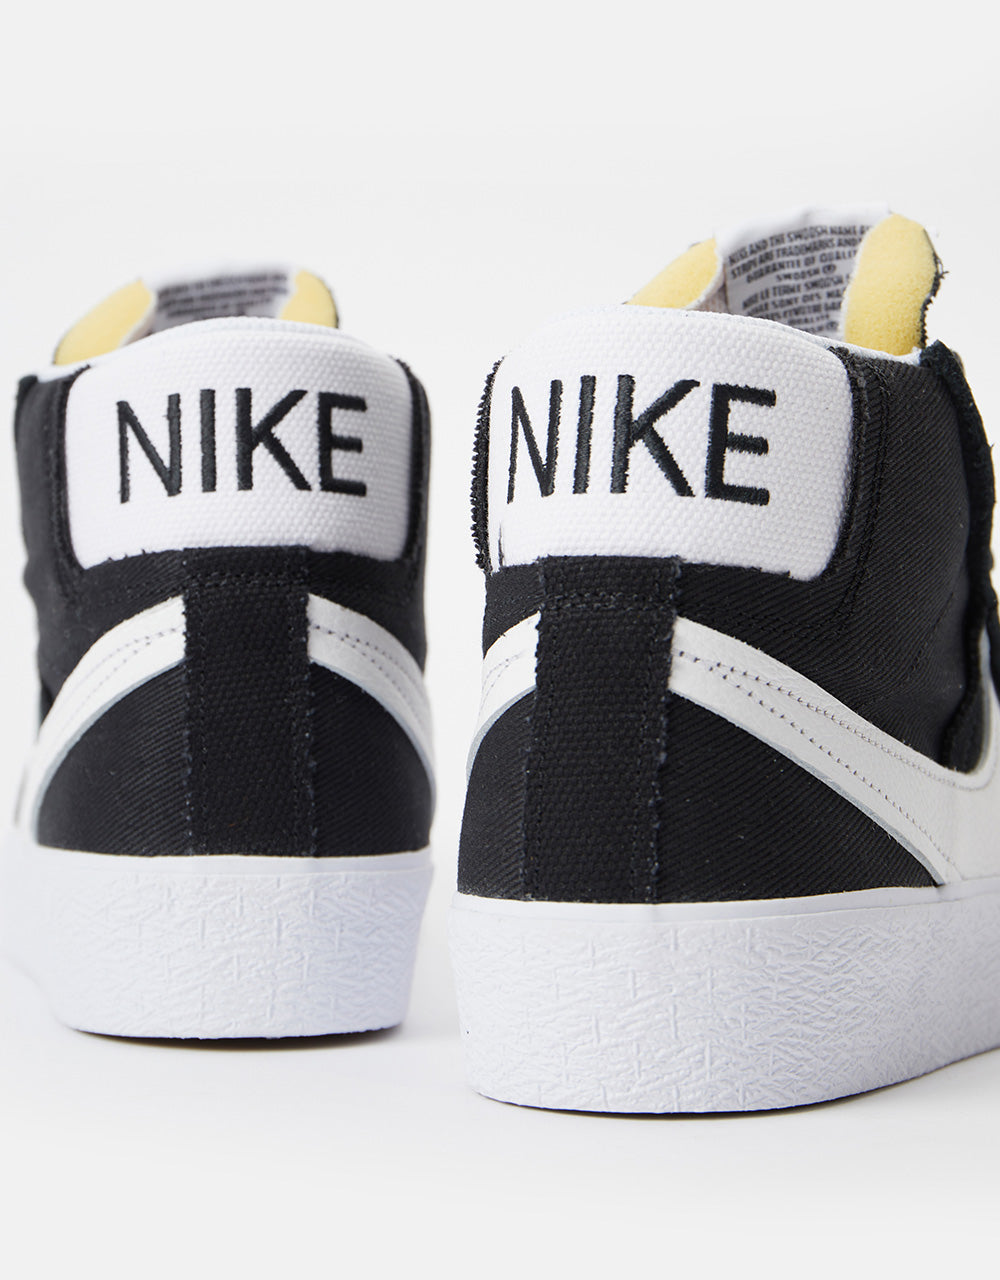 Nike SB Zoom Blazer Mid Premium Plus Skate Shoes - Black/White